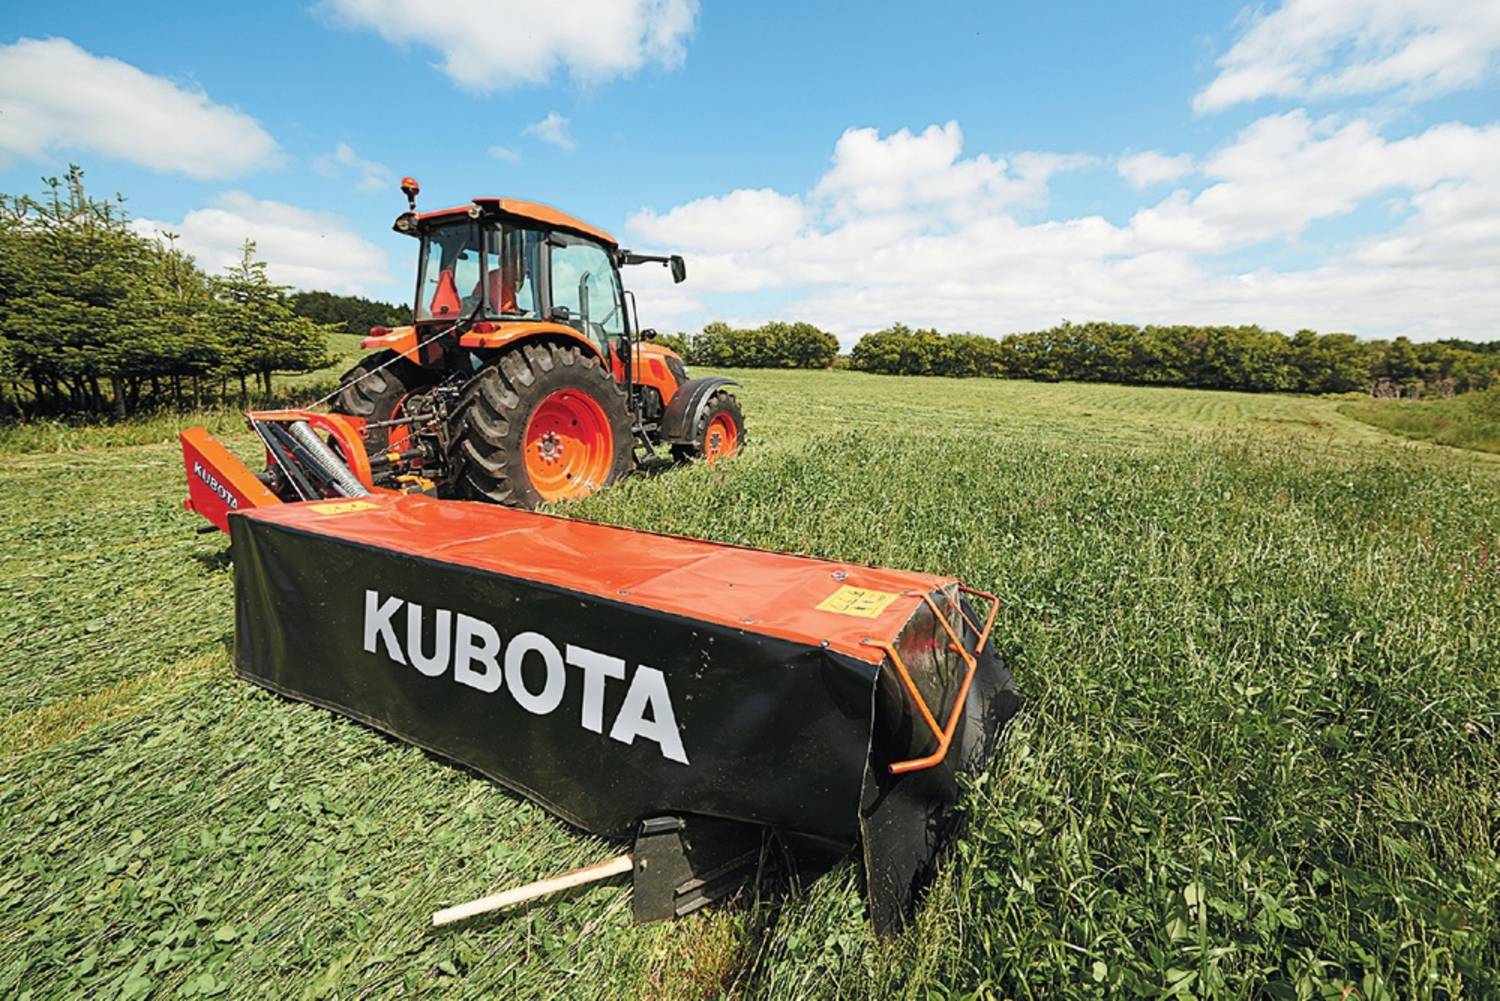 Kubota Hay Harvesting Tools